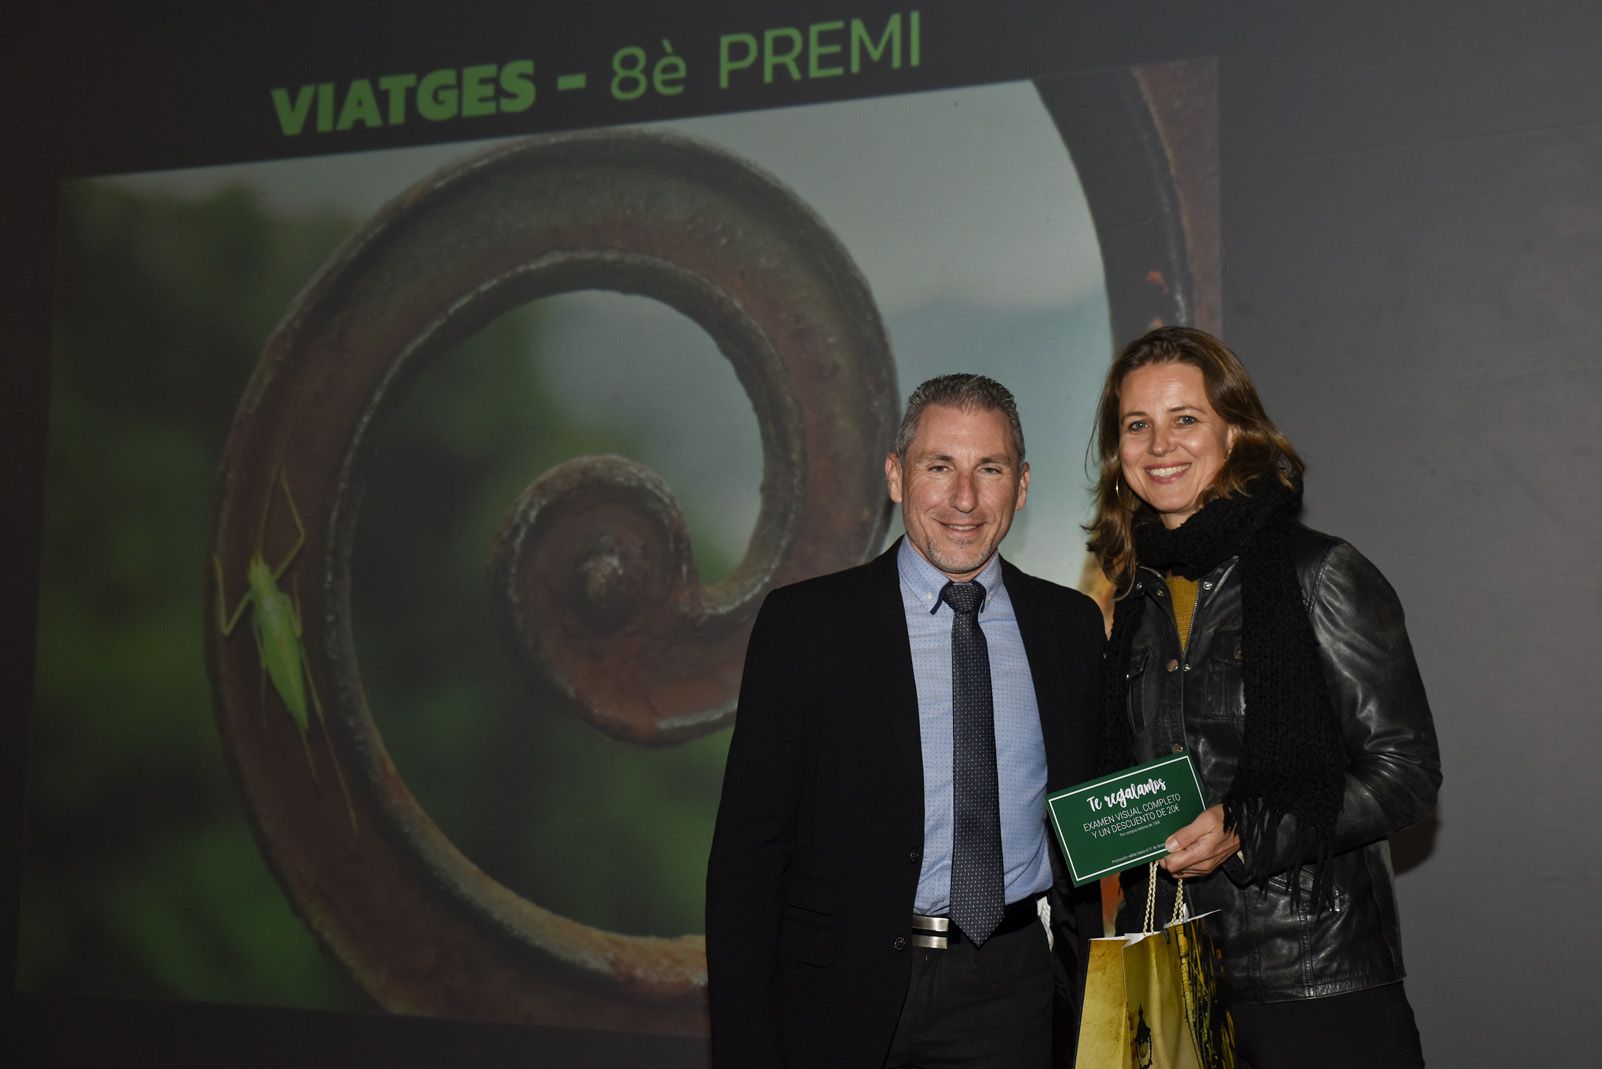 8è premi ‘Viatges’ Cristina Eichenberger - Haciendo camino. Foto: Bernat Millet.